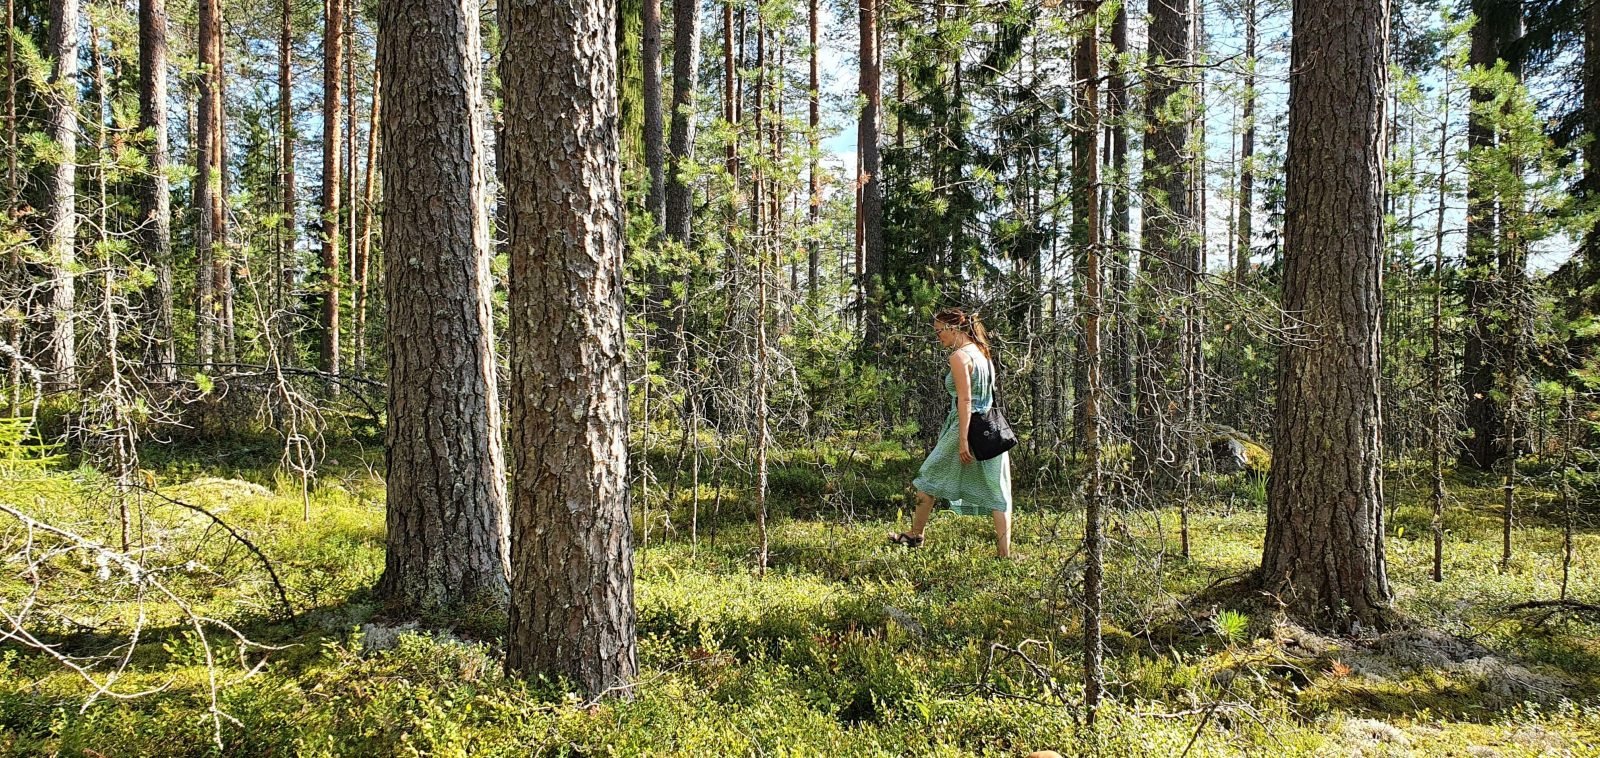 Huosionjärven metsää Kerimäellä. Kuvassa on mm. järeitä mäntyjä ja sammaleinen metsäpohja.